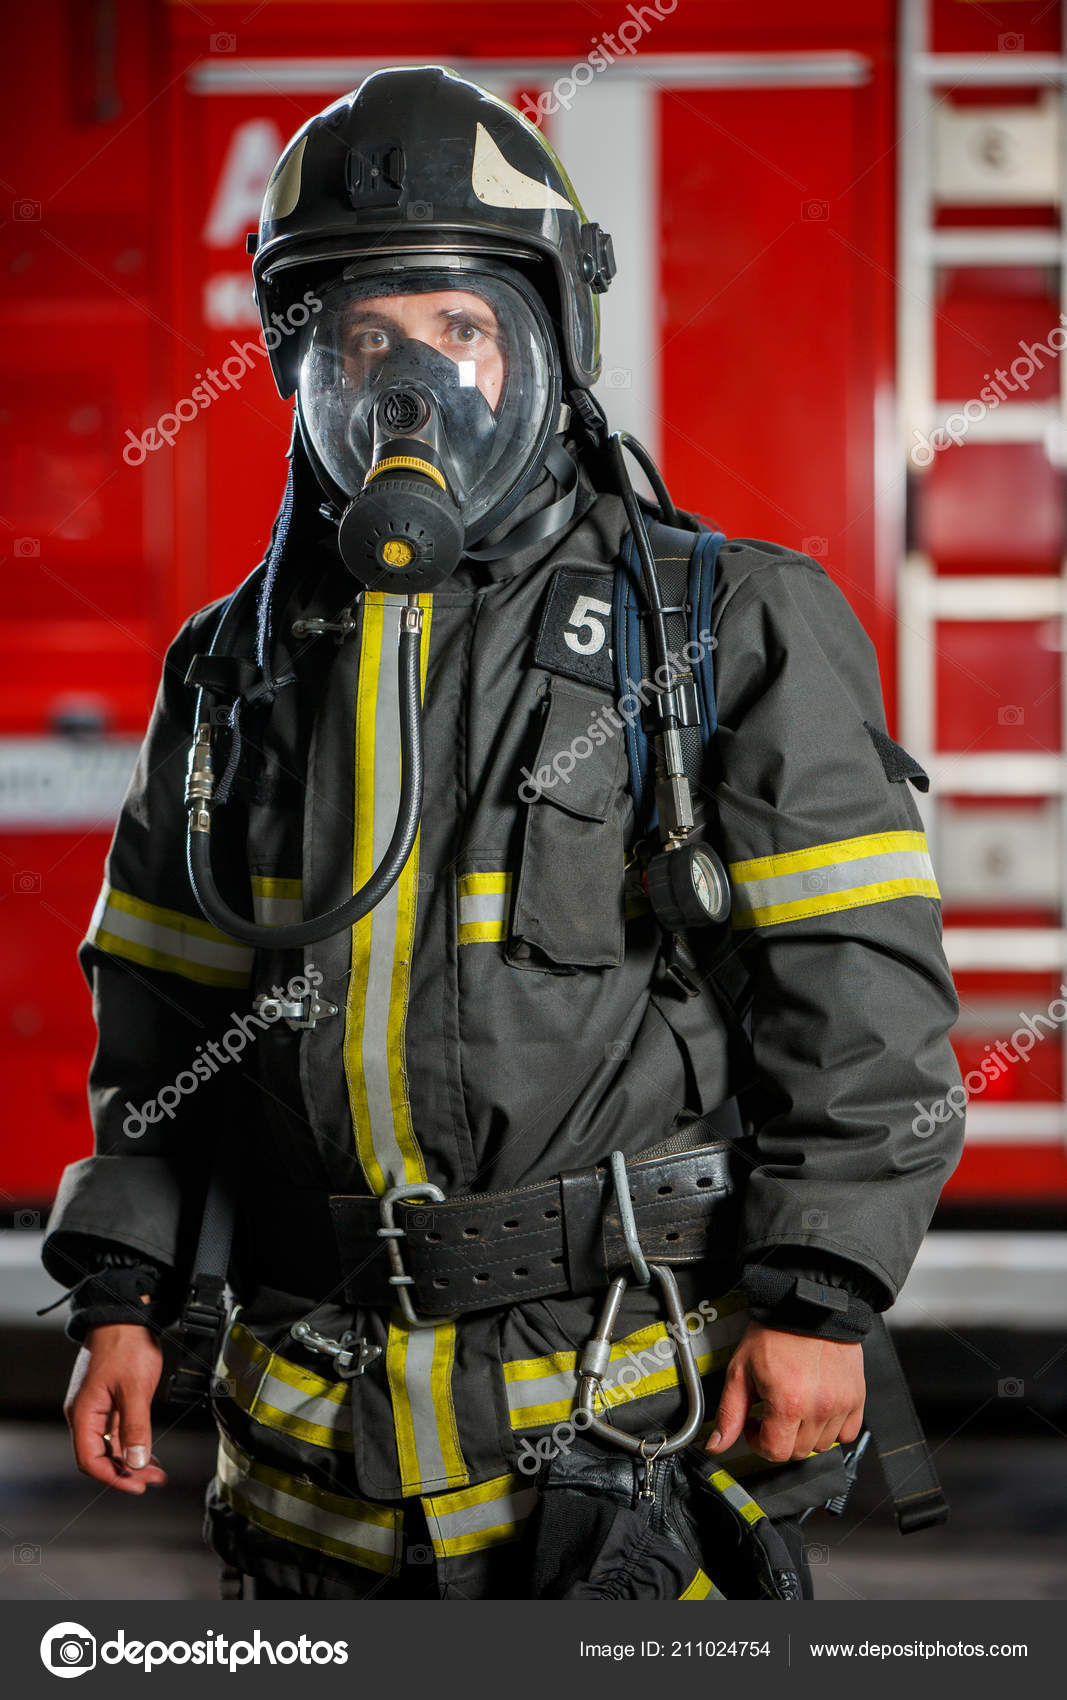 Foto von Feuerwehrmann mit Gasmaske und Helm in der Nähe von Feuerwehrauto  - Stockfotografie: lizenzfreie Fotos © logoff 211024754